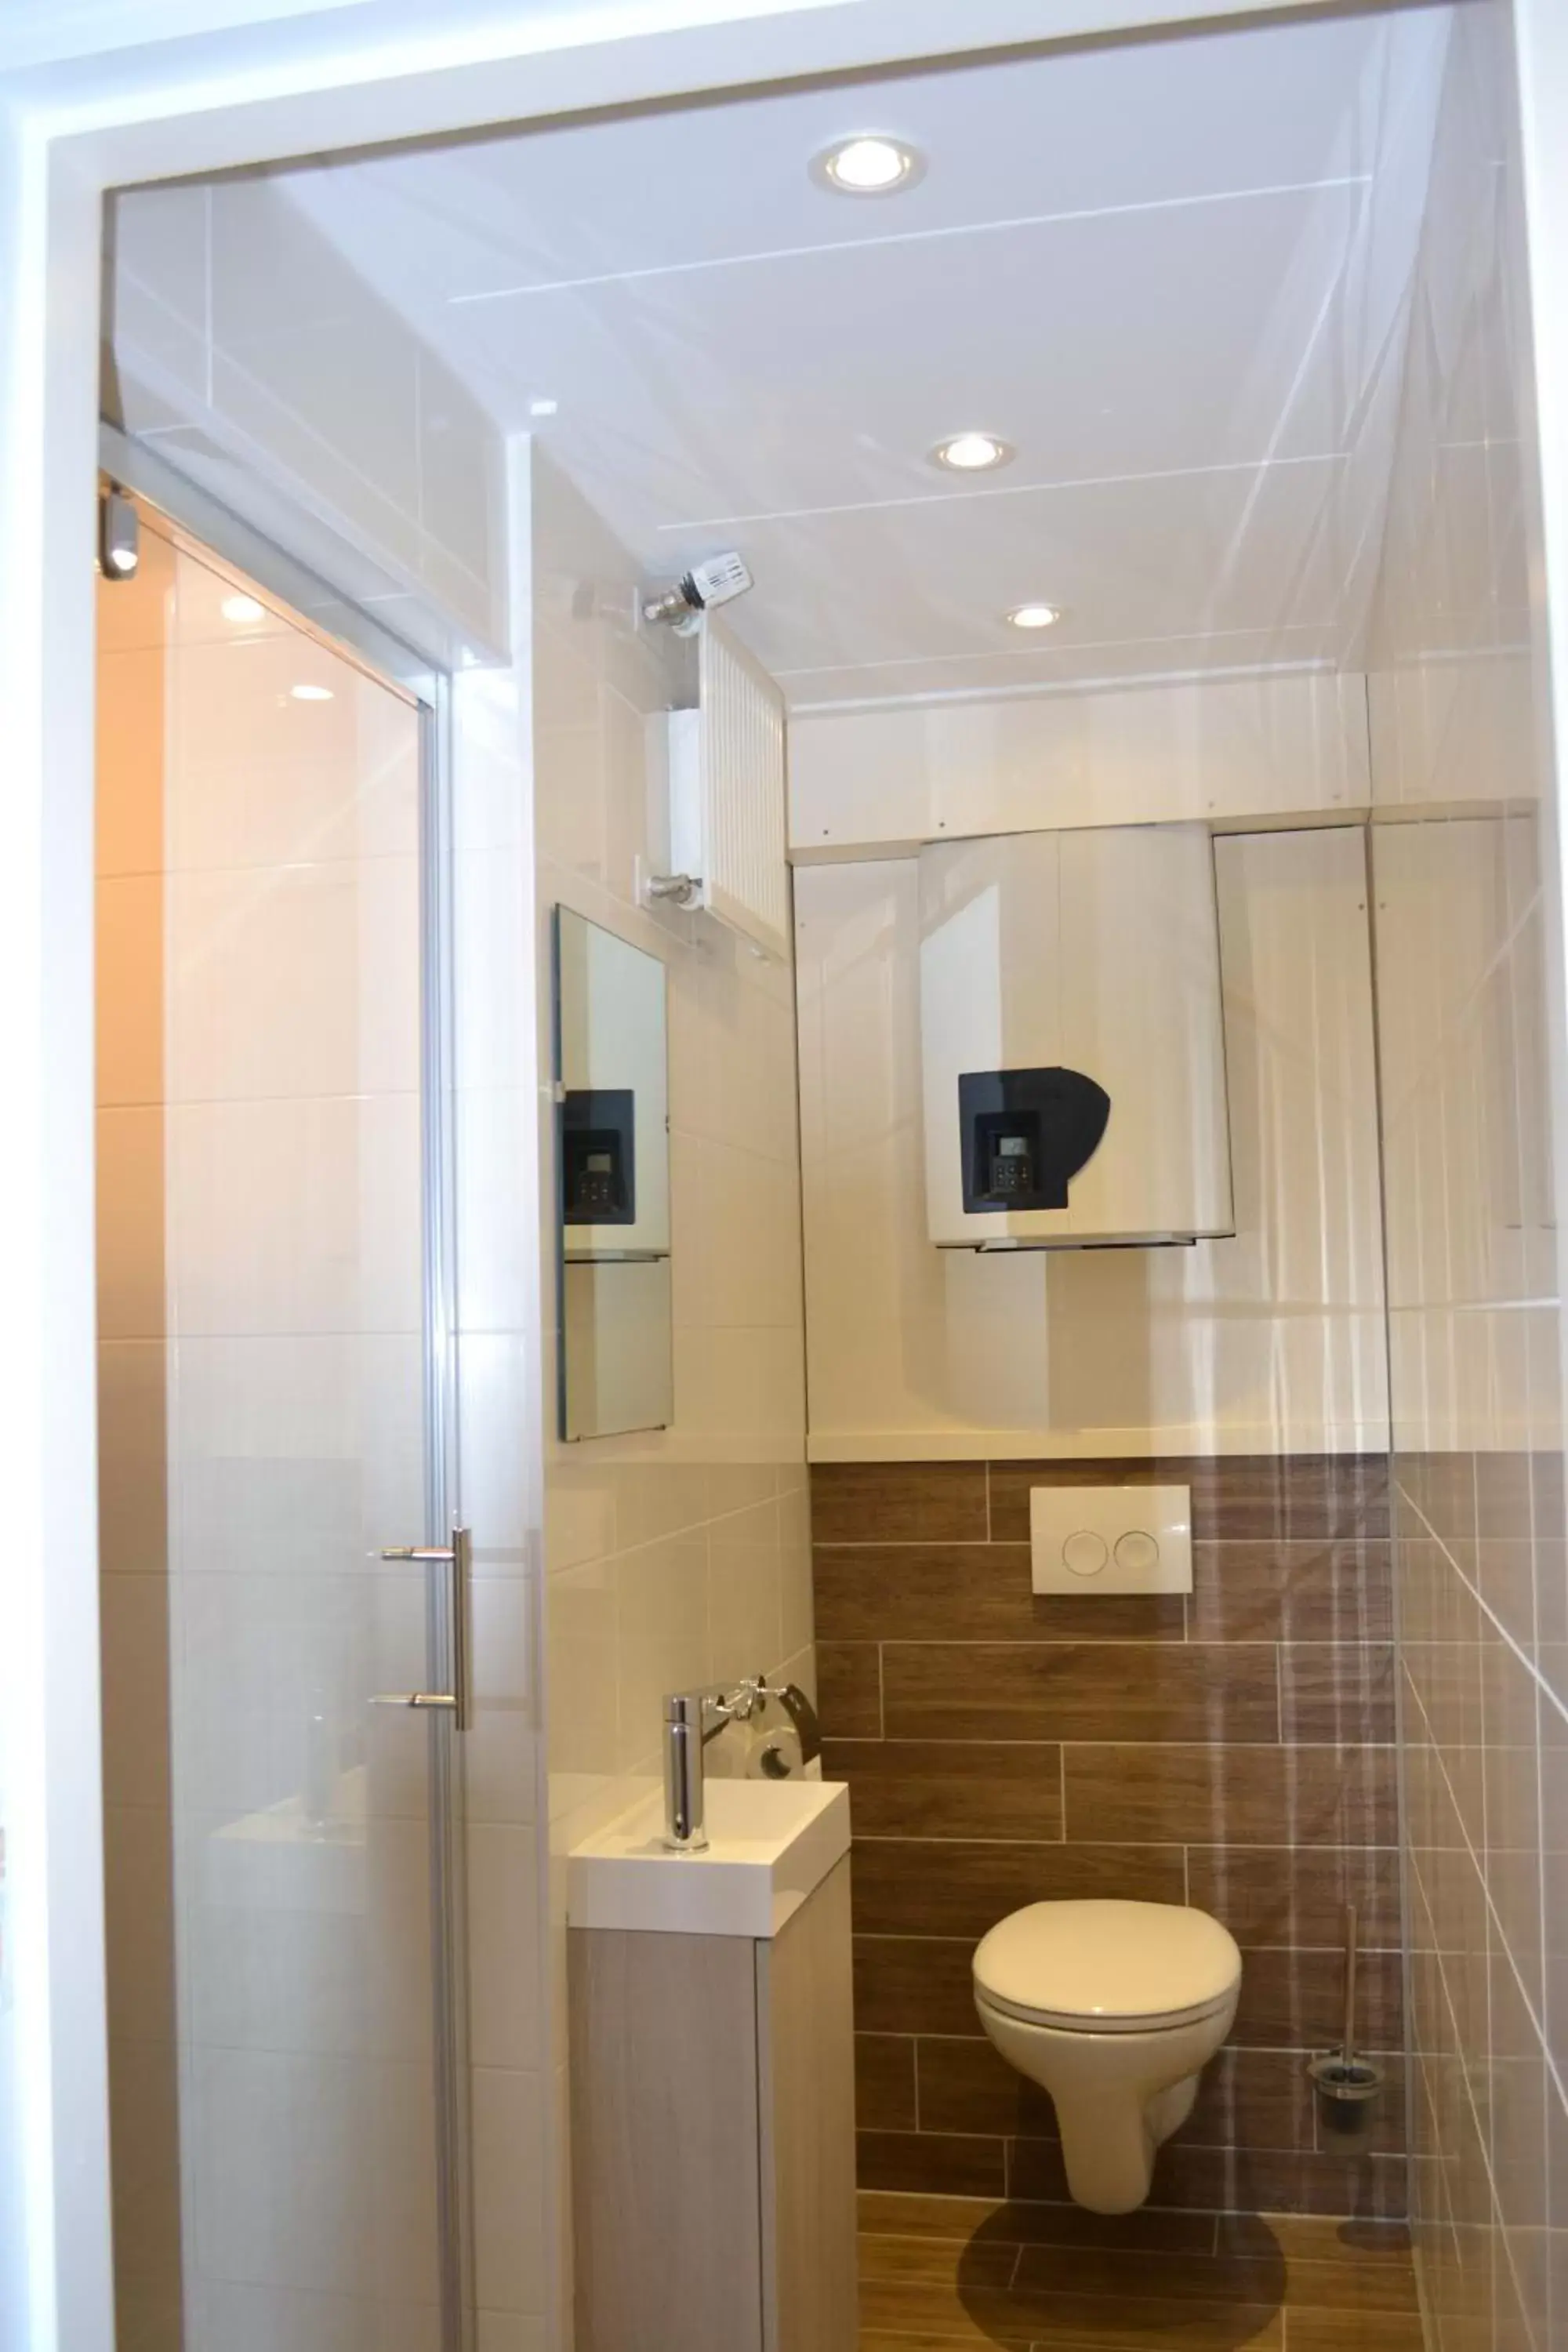 Toilet, Bathroom in Bed & Breakfast Boszicht Leeuwarden